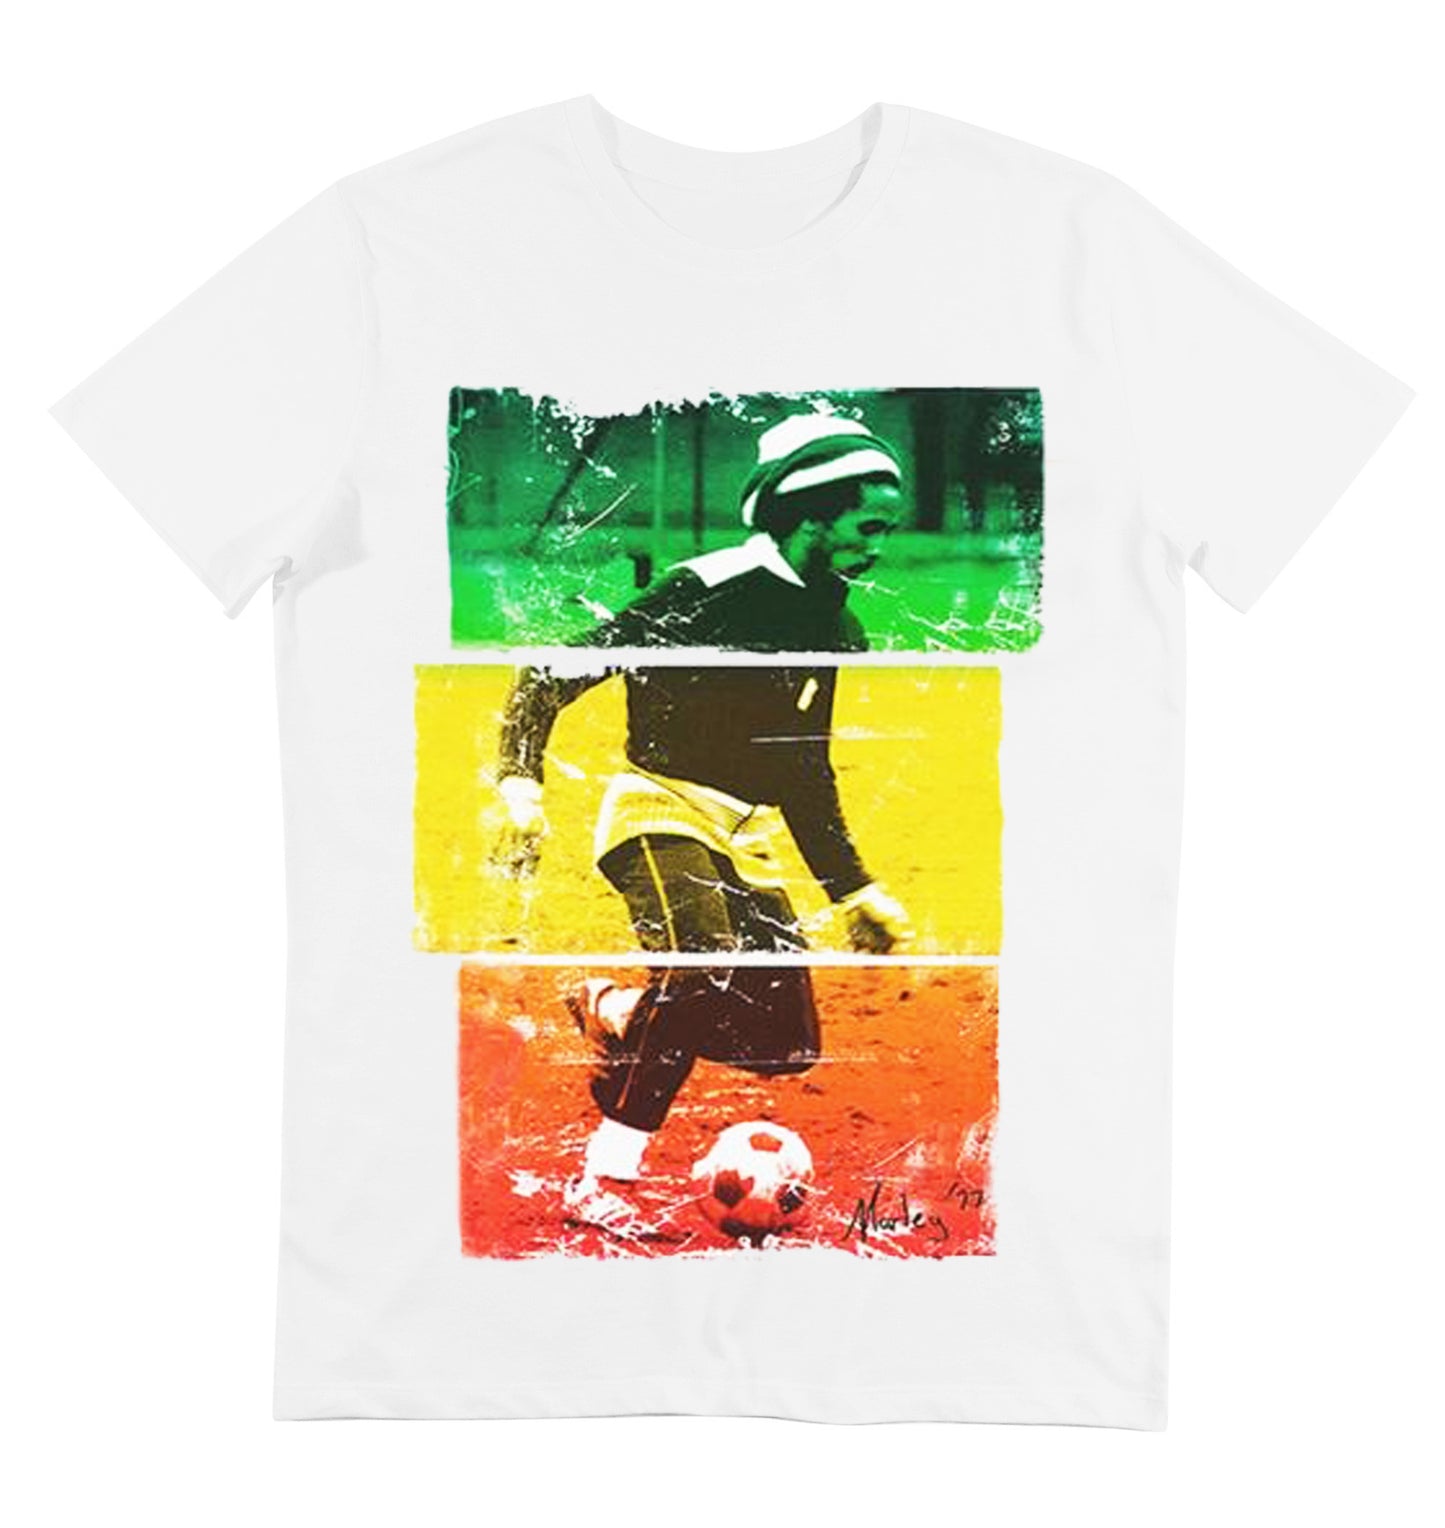 T-shirt blanc imprime photo de bob marley qui joue au foot - GL BOUTIK